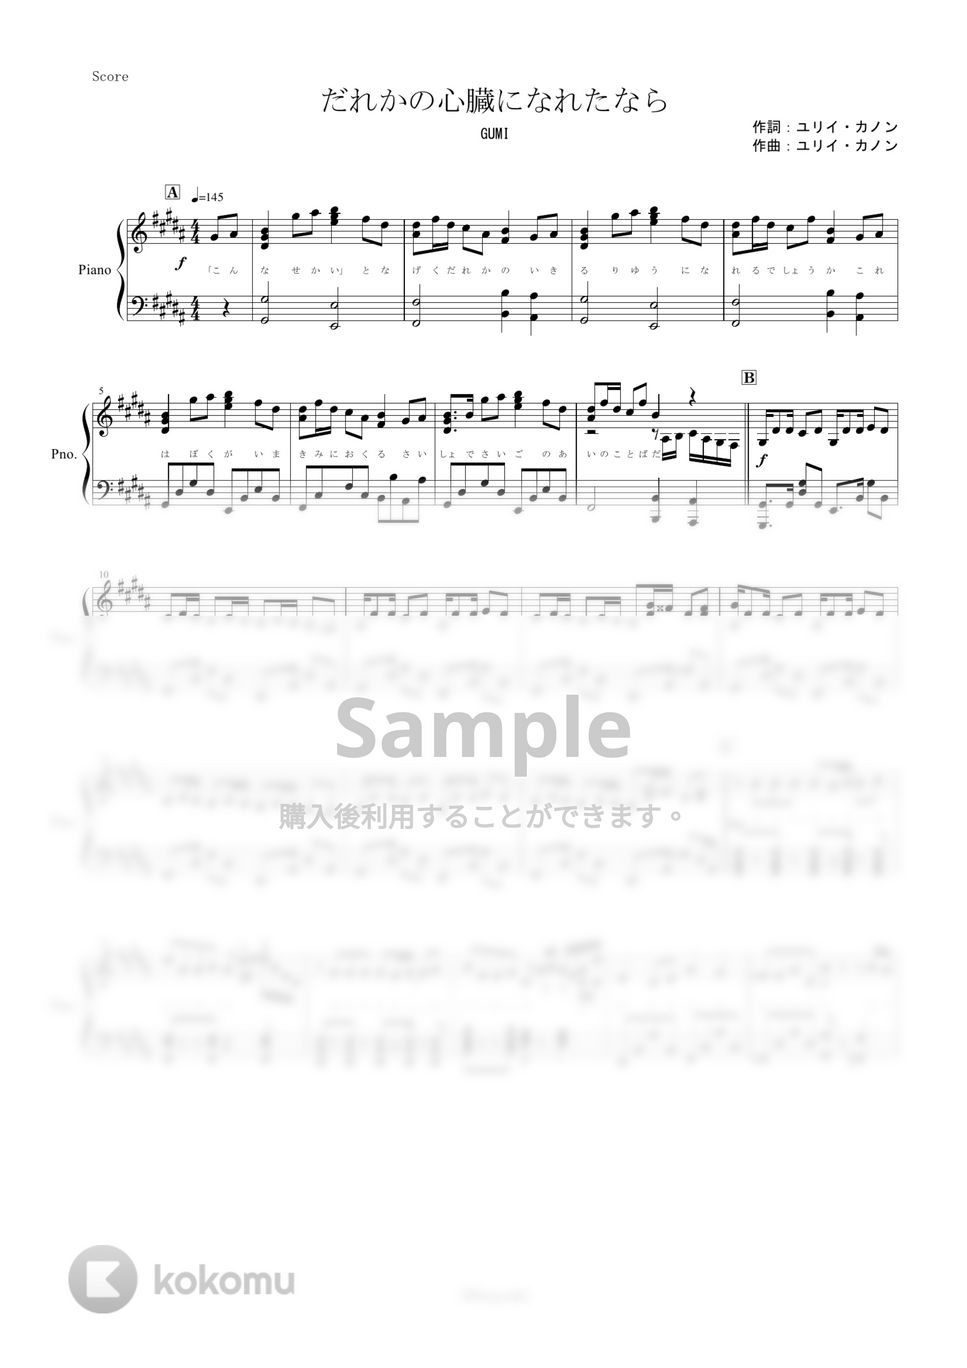 ユリイ・カノン feat.GUMI - だれかの心臓になれたなら (ピアノ楽譜/全５ページ) by yoshi